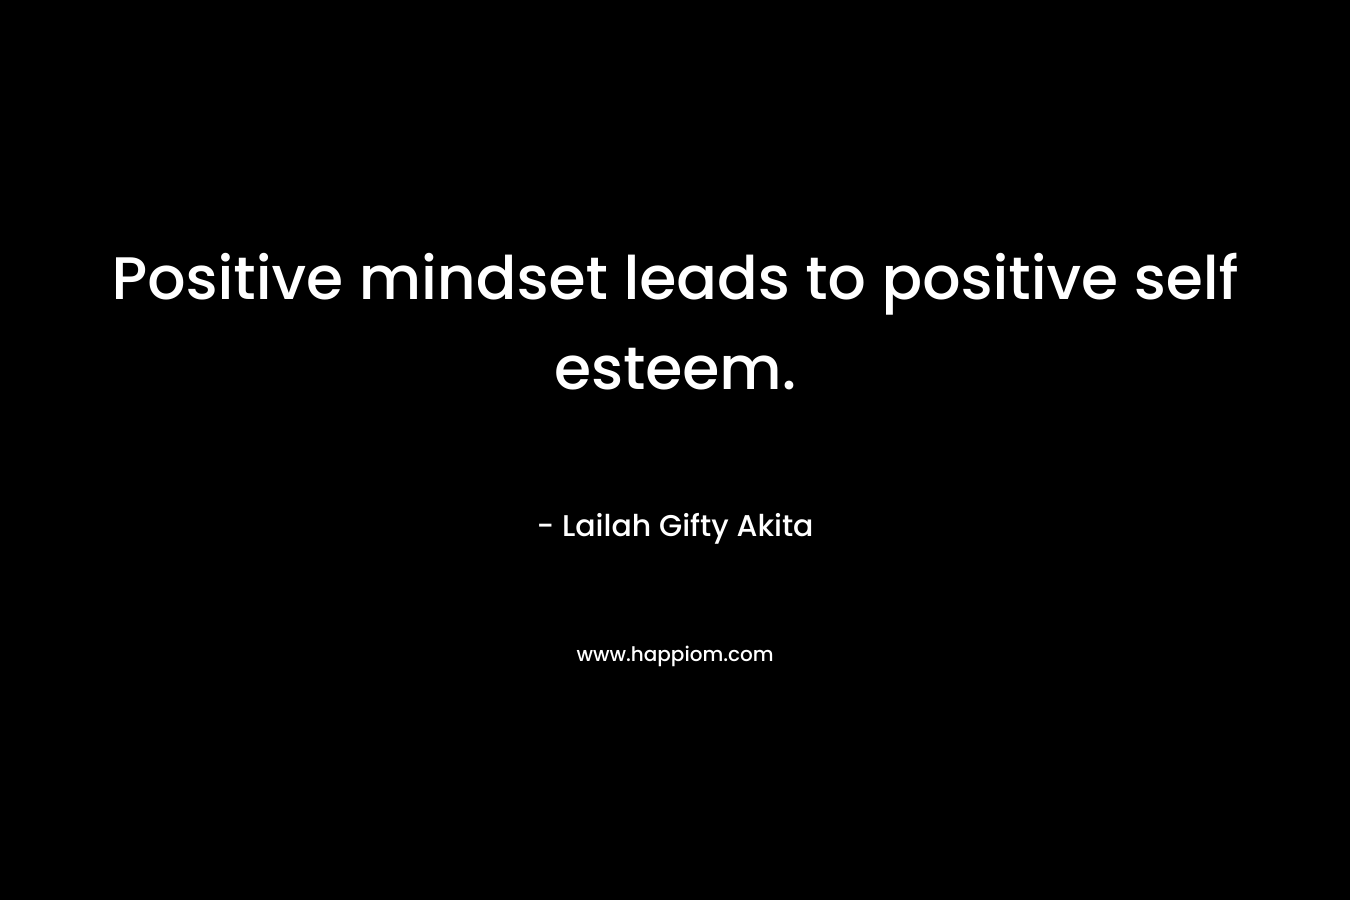 Positive mindset leads to positive self esteem.